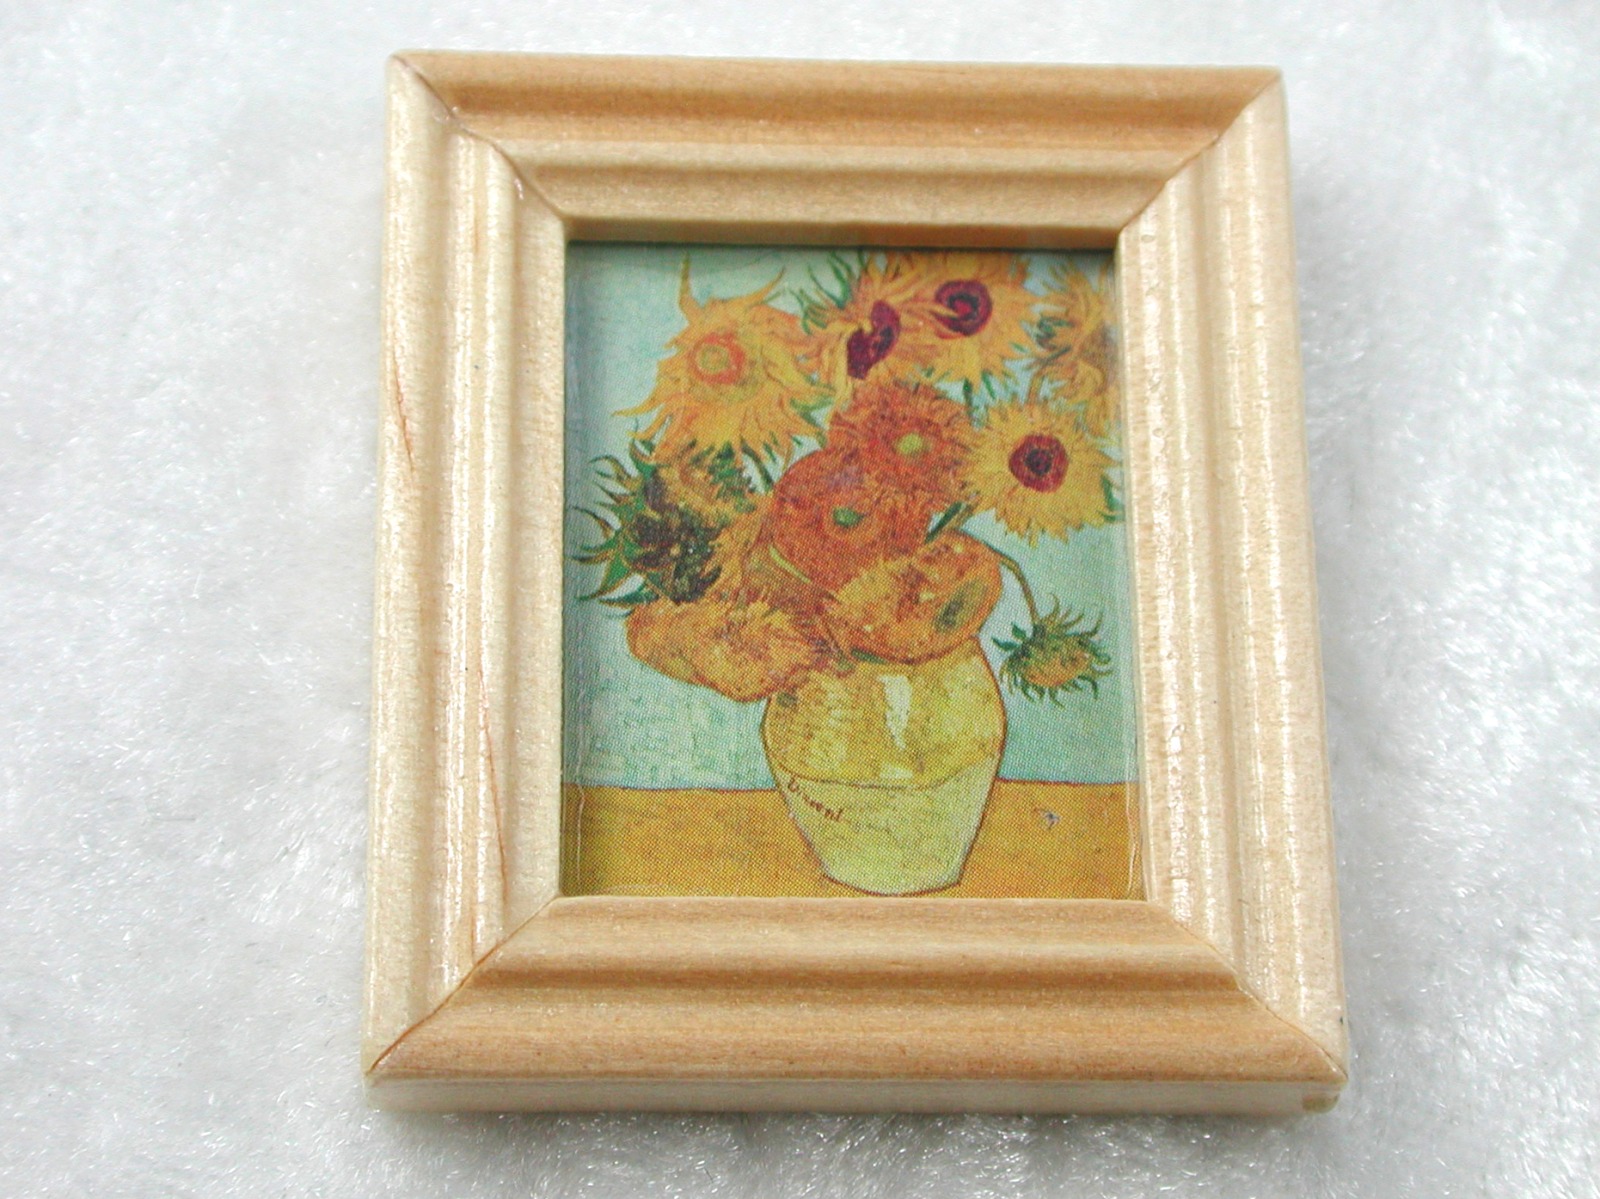 Gemäldekopie Sonnenblumen im Holzrahmen 3x 4x 05 cm